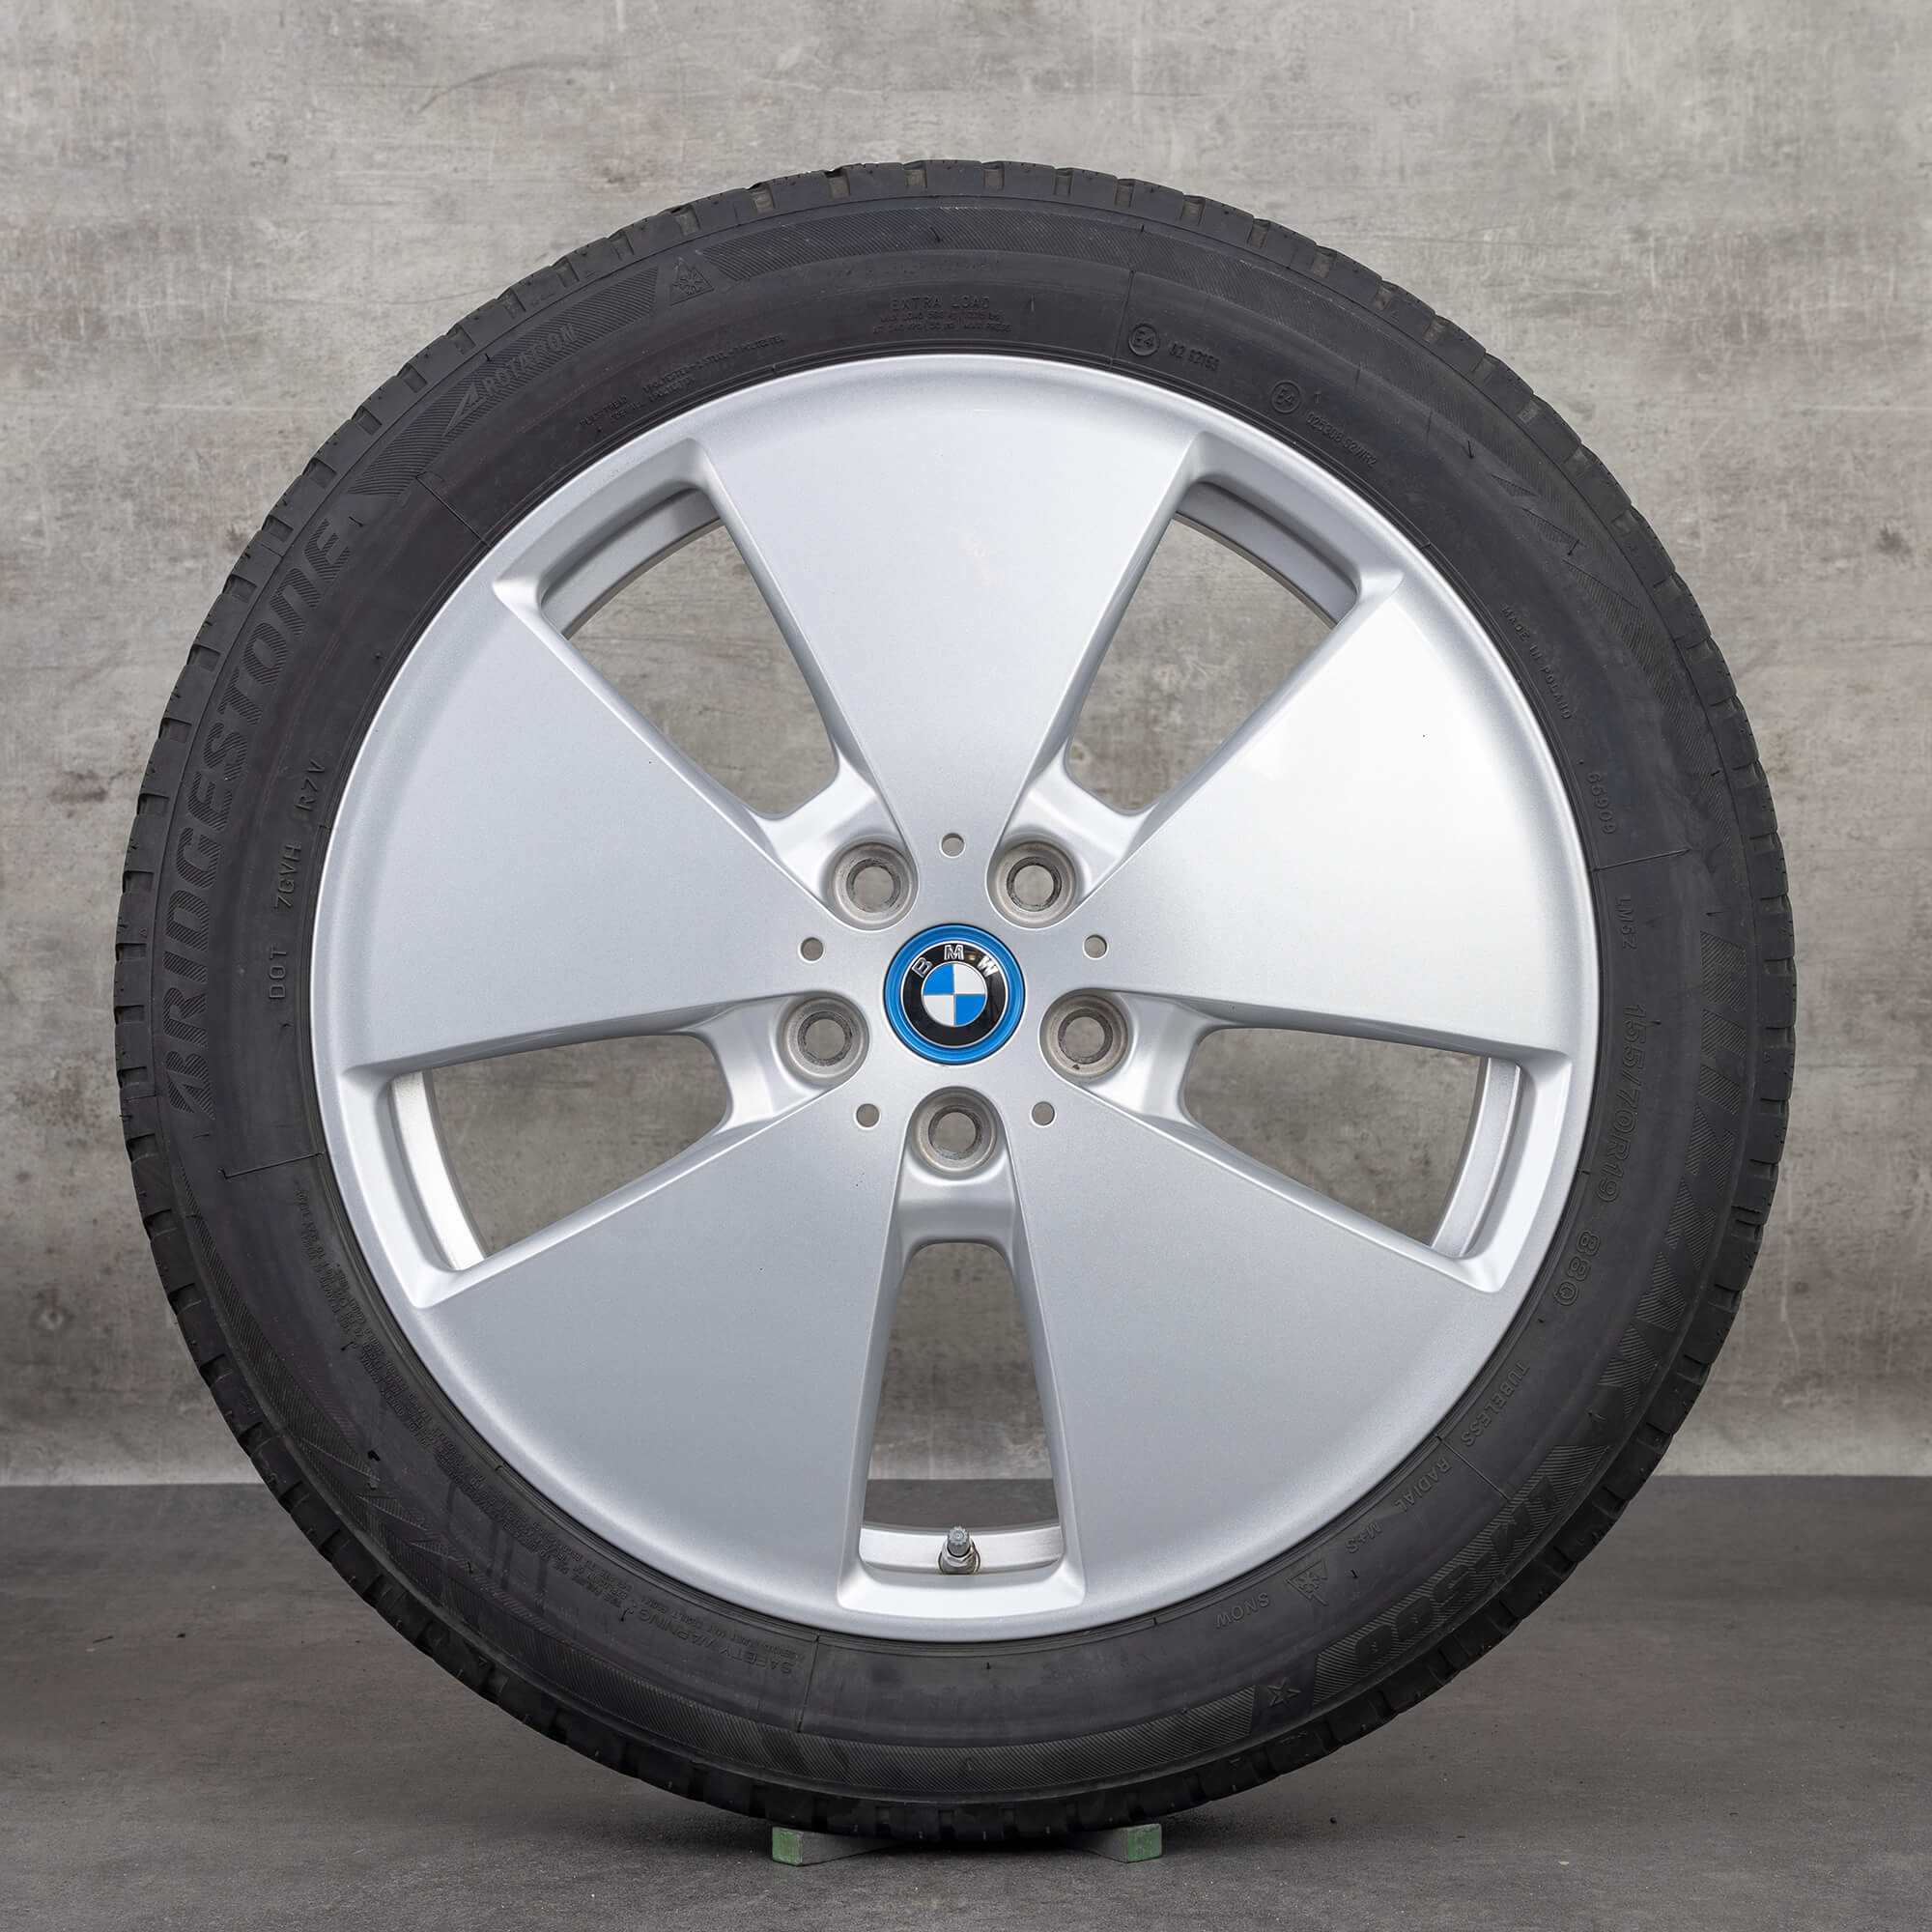 Jantes BMW de 19 polegadas i3 jantes alumínio estilo 427 pneus inverno rodas